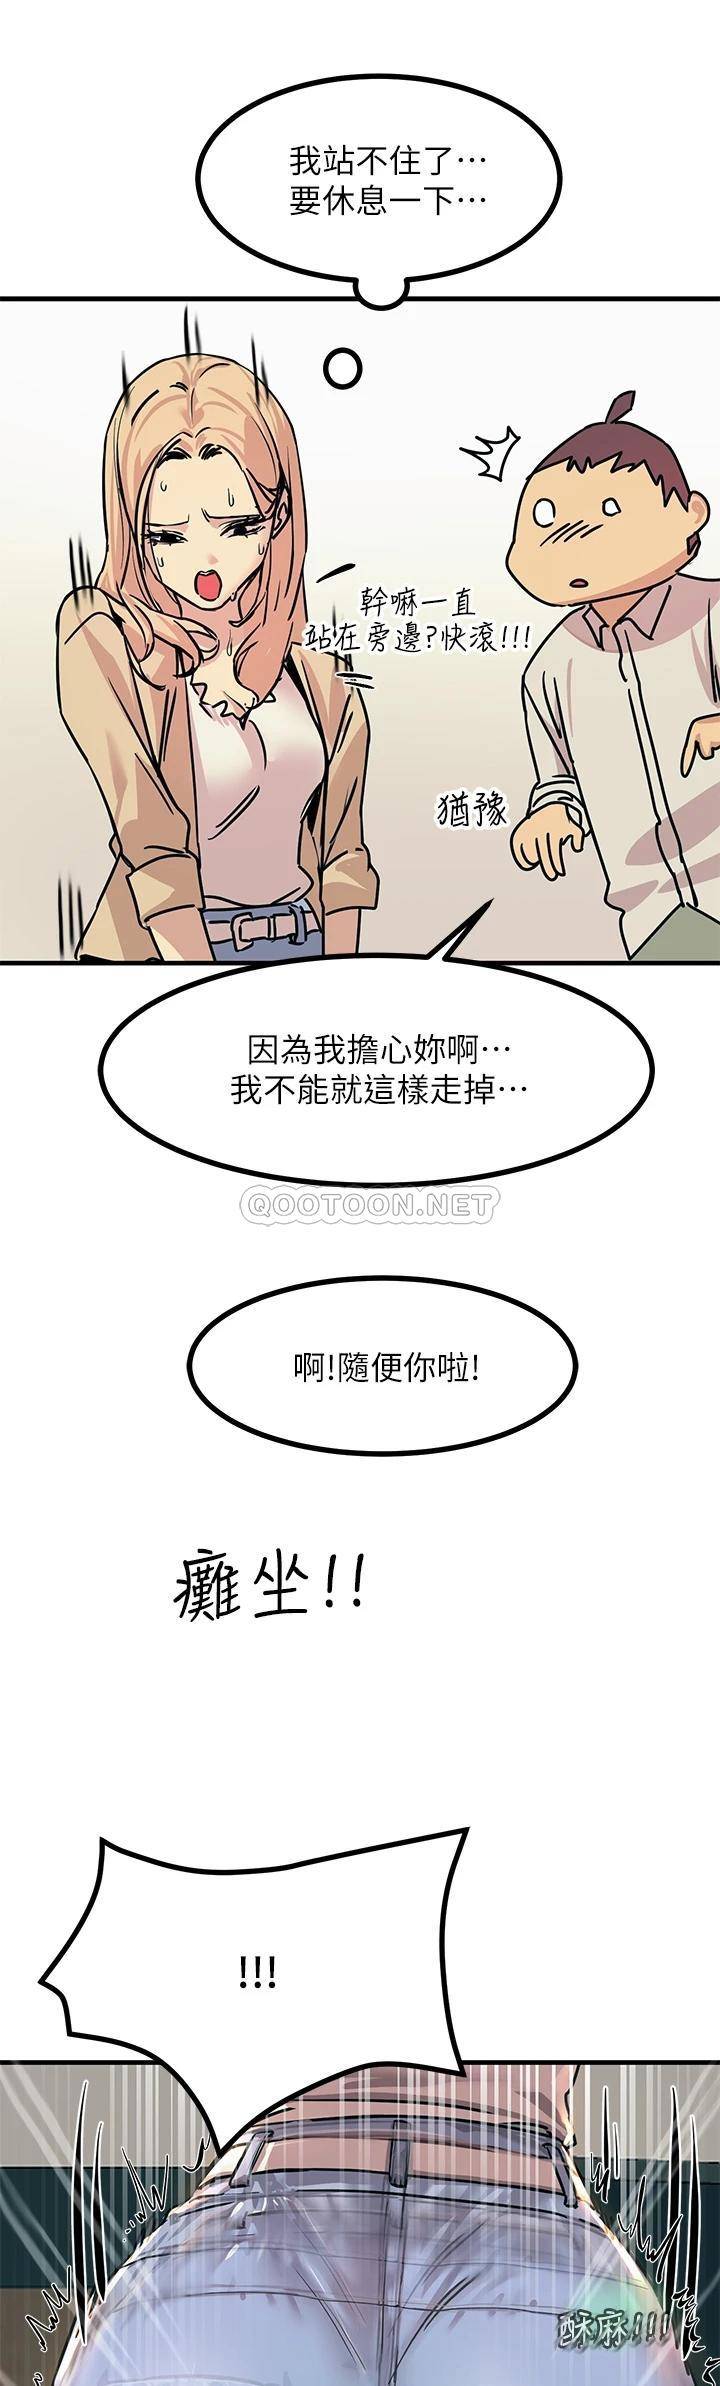 韩国污漫画 觸電大師 第9话 被奴隶搞到有感觉 17